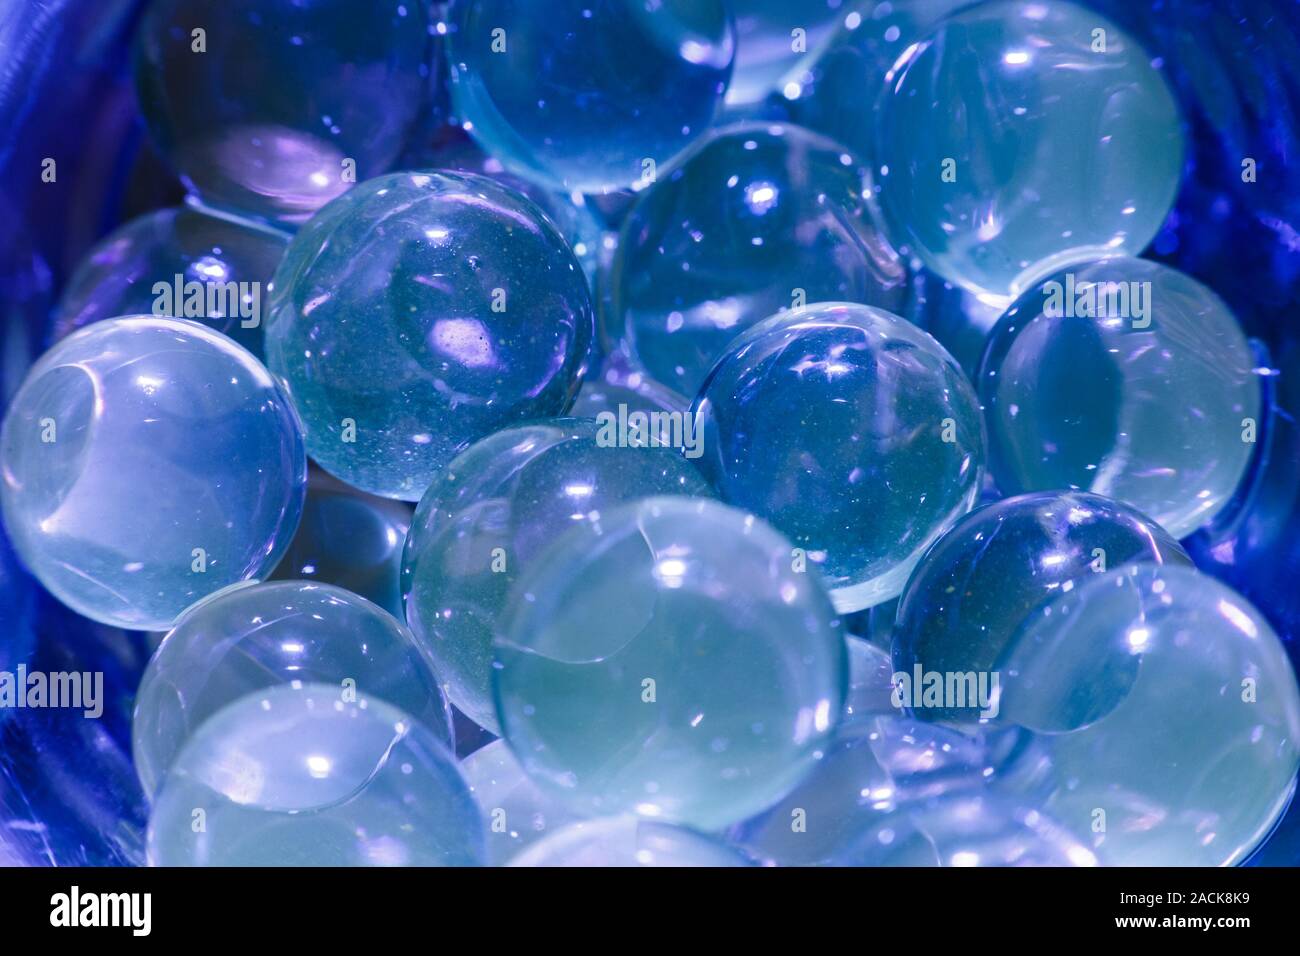 Wasser blau Gel Kugeln. Polymer gel. Silica Gel. Kugeln blau Hydrogel.  Liquid Crystal Ball mit Reflexion. Textur Hintergrund. Nahaufnahme Makro  Stockfotografie - Alamy